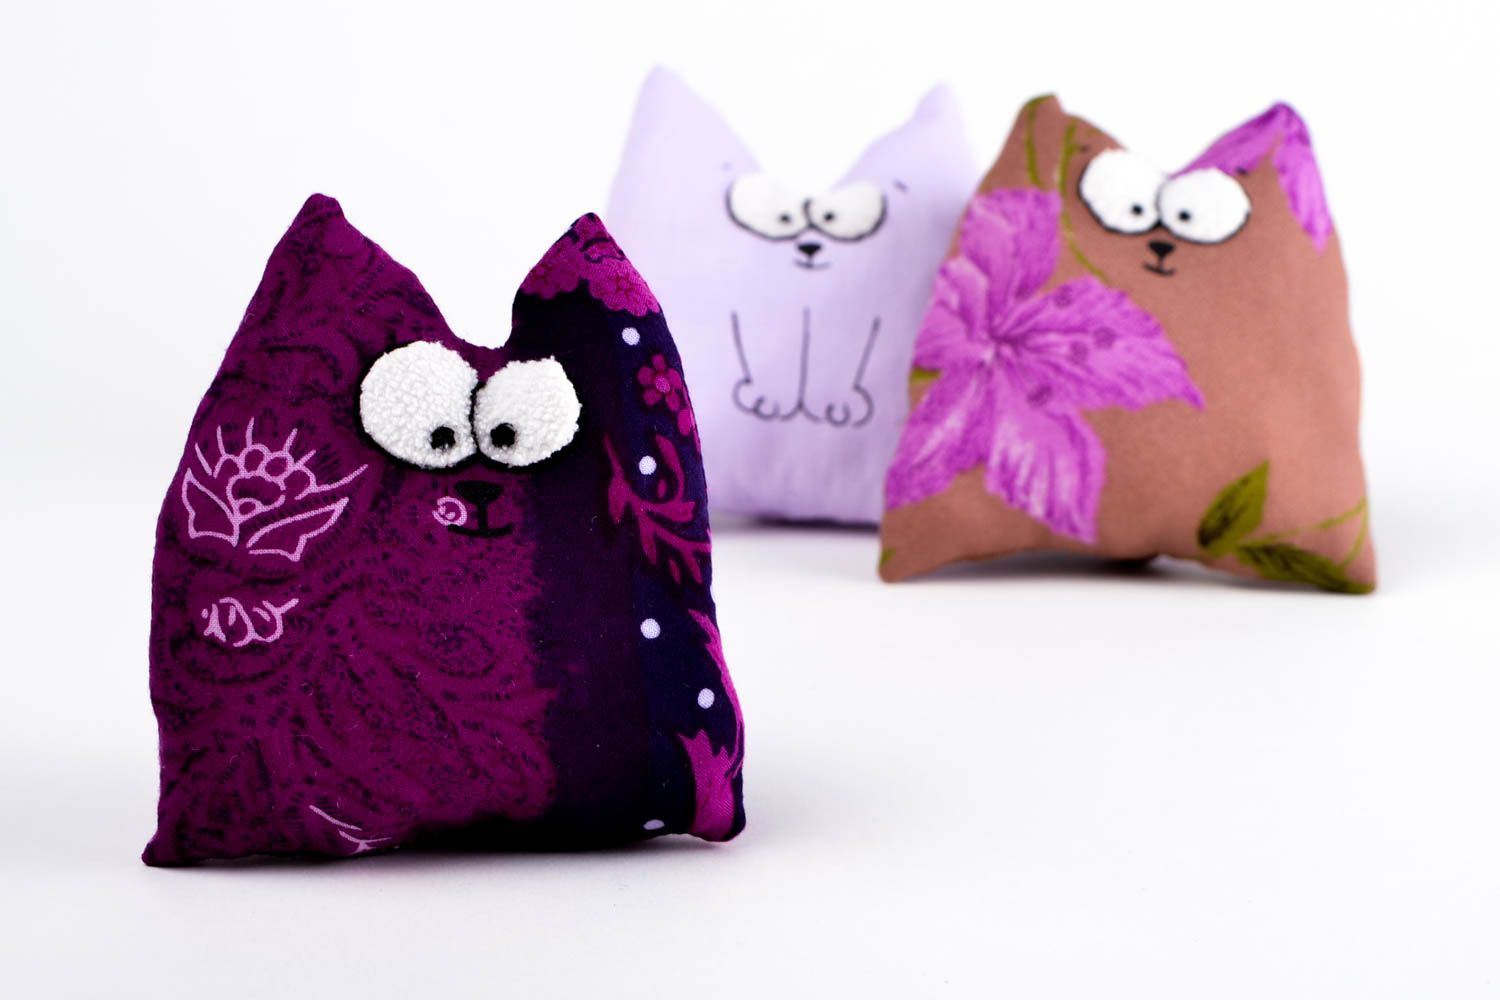 Интерьерная игрушка ручной работы игрушка из ткани фиолетовая игрушка кот фото 1